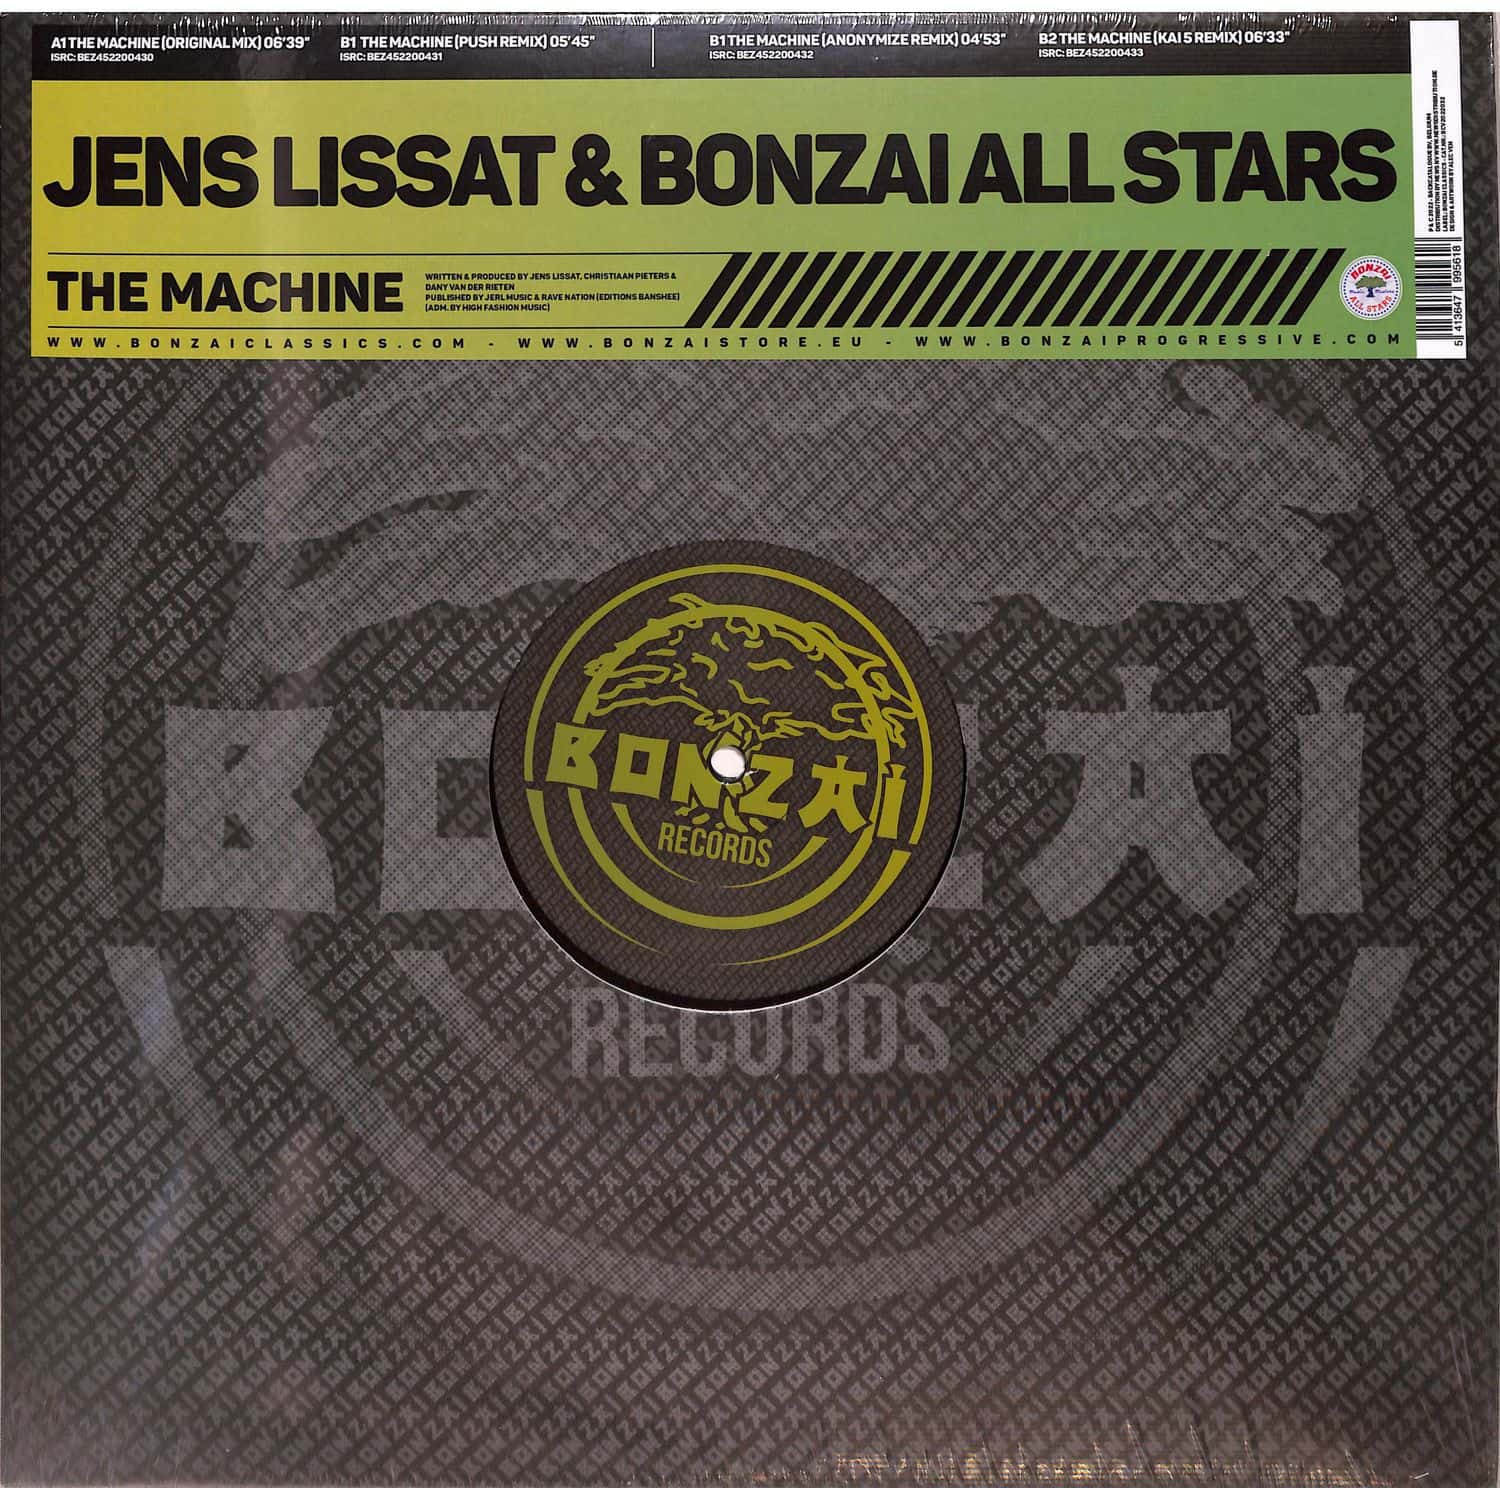 Jens Lissat & Bonzai All Stars - THE MACHINE